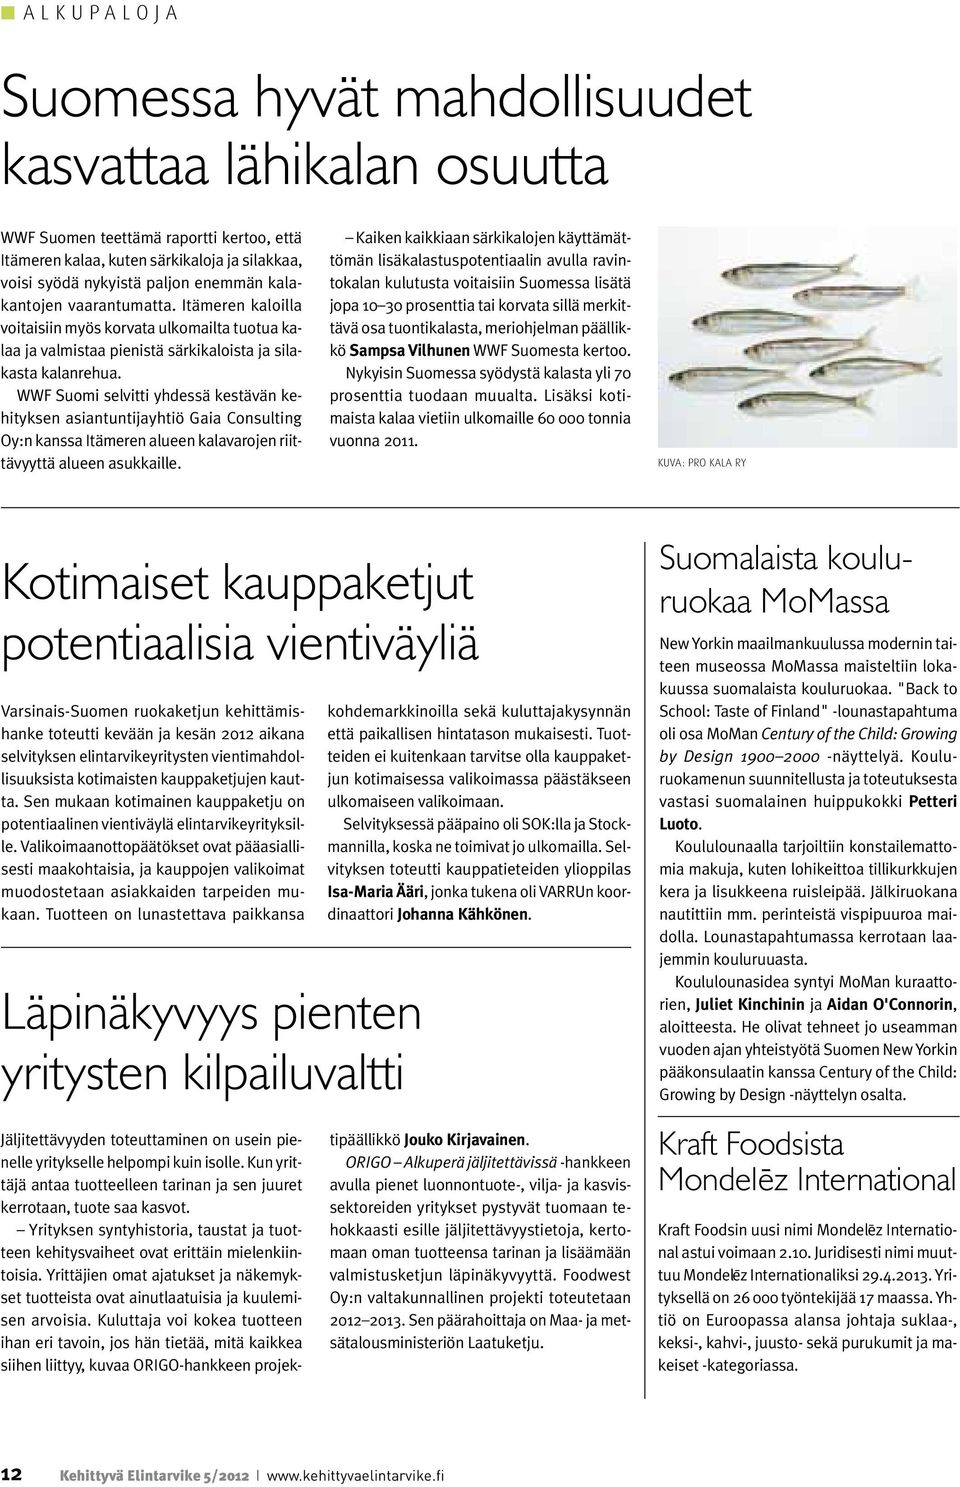 WWF Suomi selvitti yhdessä kestävän kehityksen asiantuntijayhtiö Gaia Consulting Oy:n kanssa Itämeren alueen kalavarojen riittävyyttä alueen asukkaille.